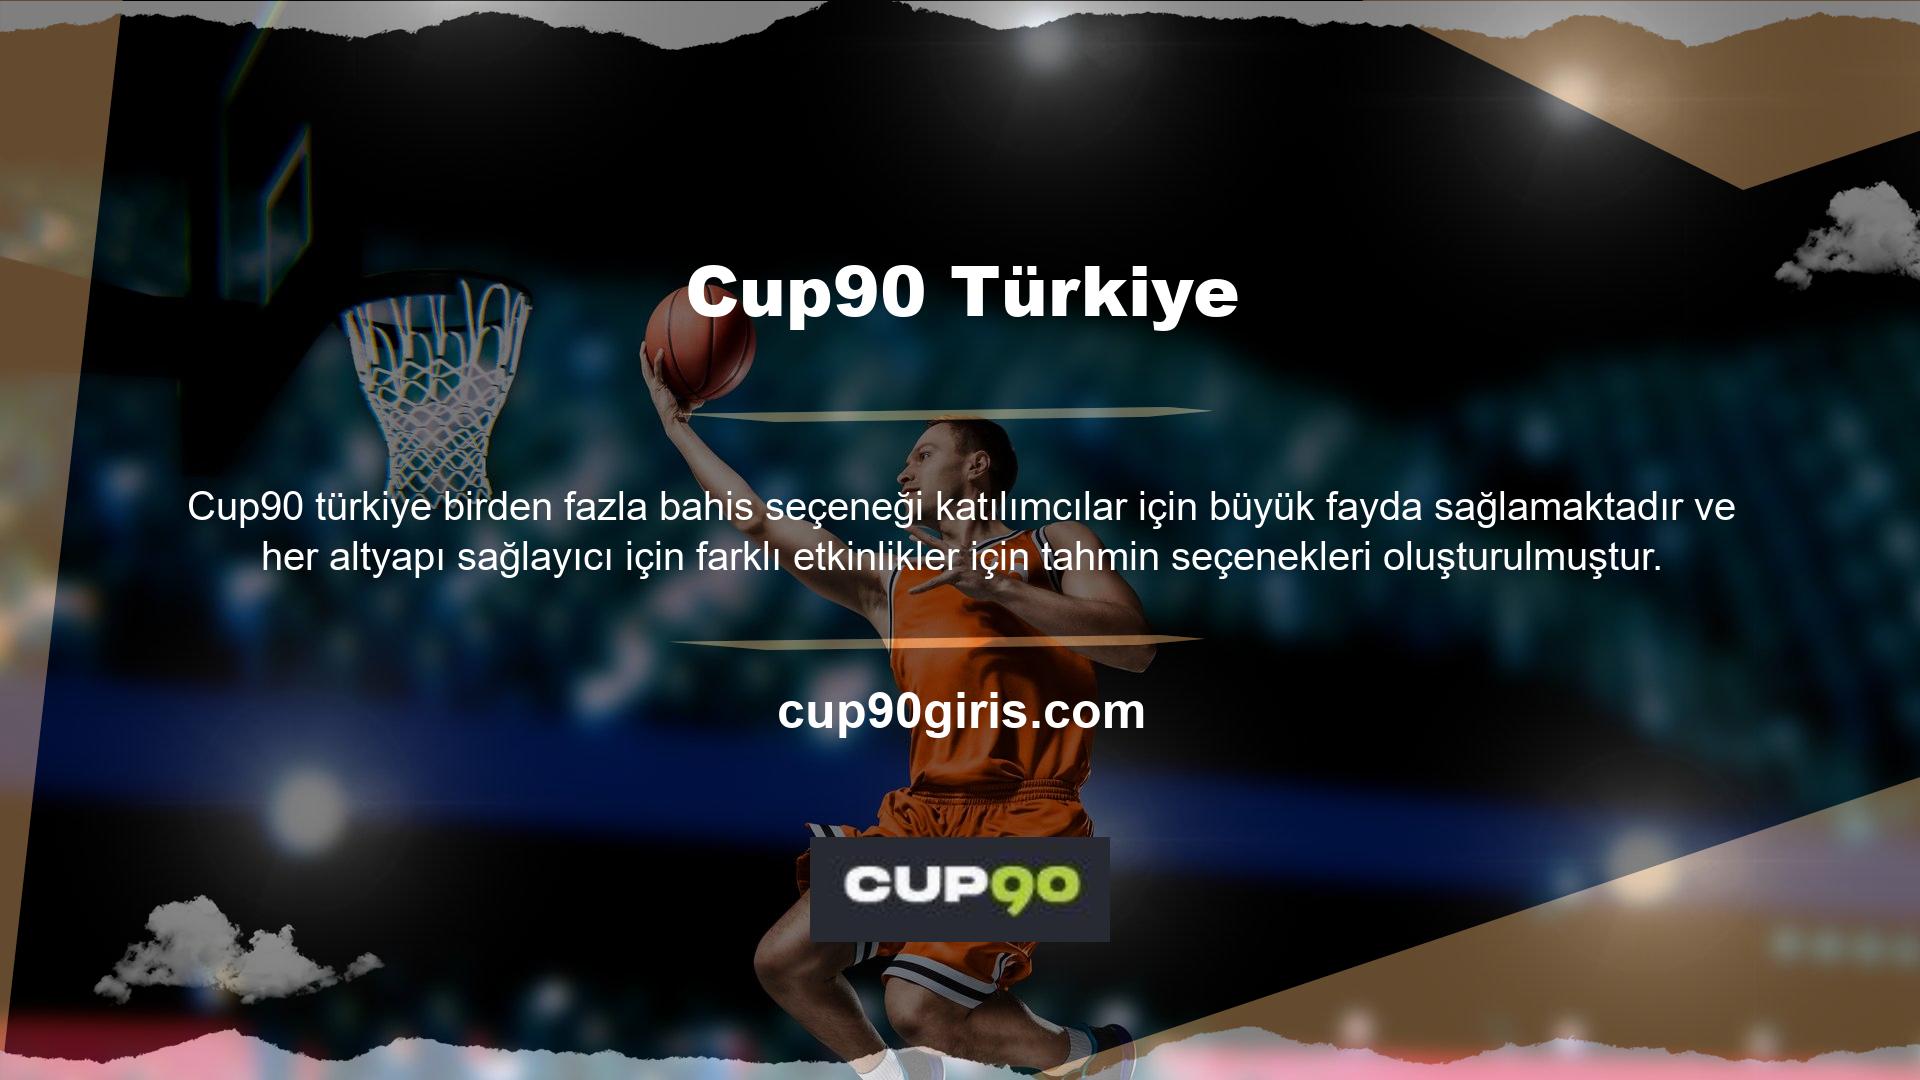 Altyapı dışında, Cup90 hala Türk casino pazarındaki yüksek payı ile tanınmaktadır